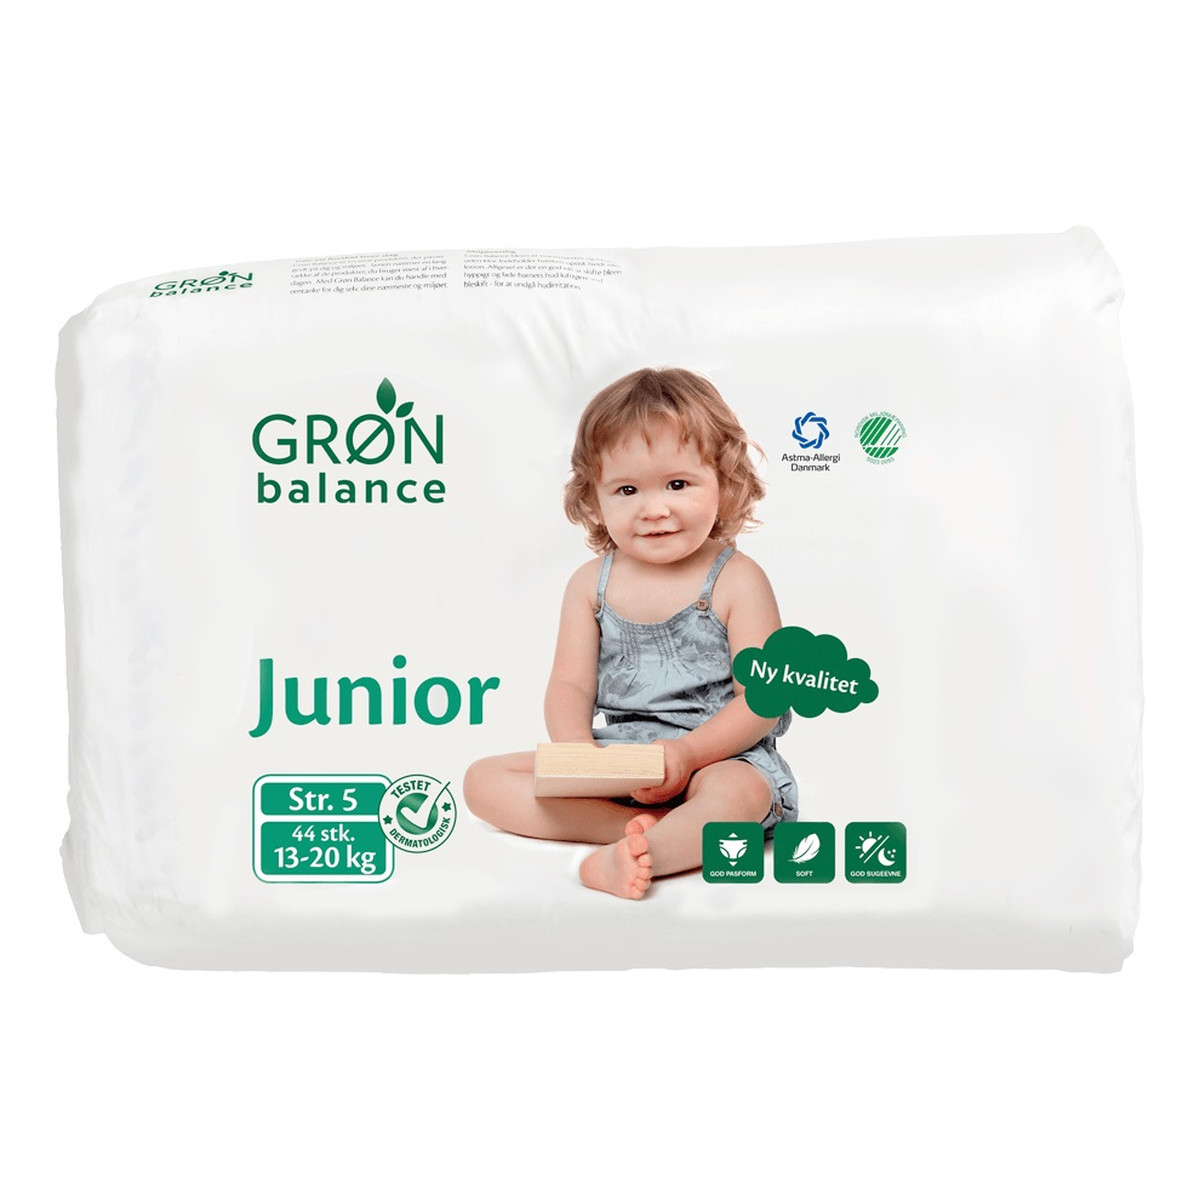 Gron Balance Pieluchy dla dzieci junior 13-20kg 44szt.